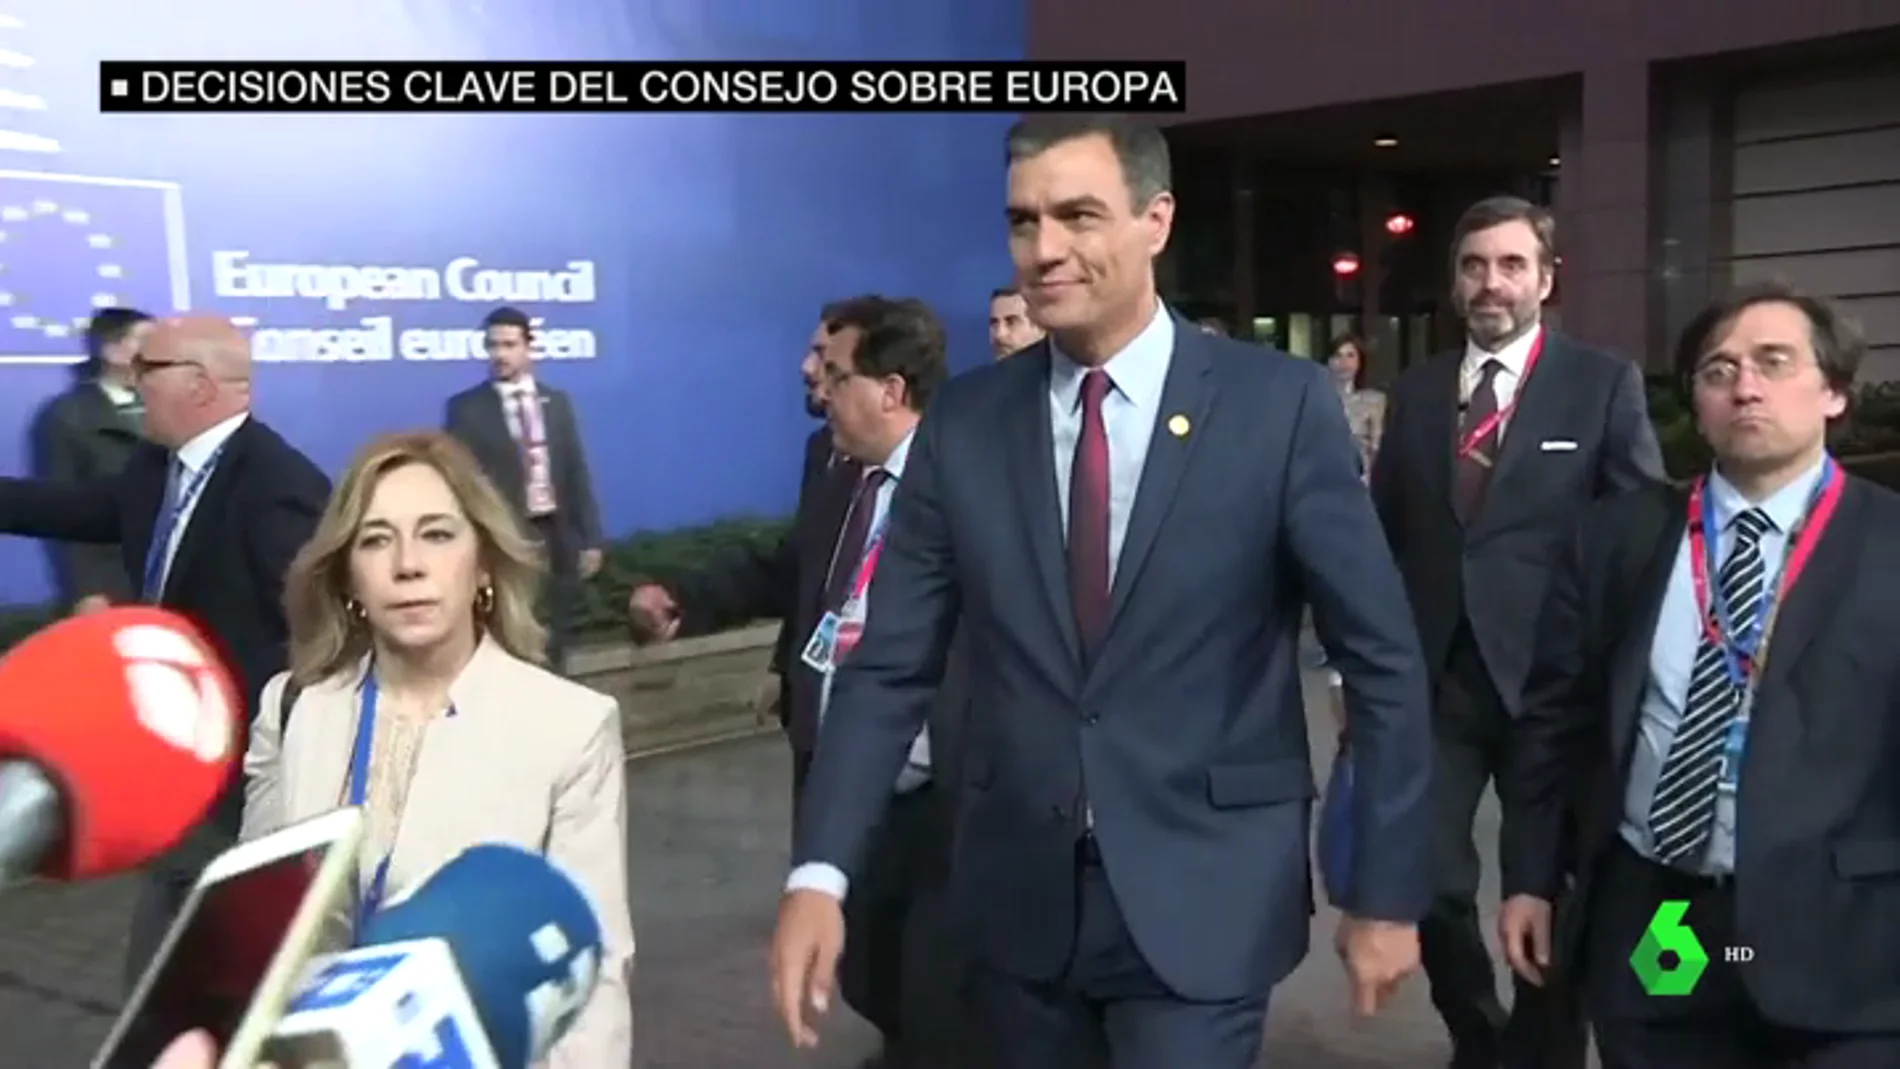 Decisiones clave en las instituciones europeas: por primera vez habrá paridad y uno de los mayores impulsores es Pedro Sánchez